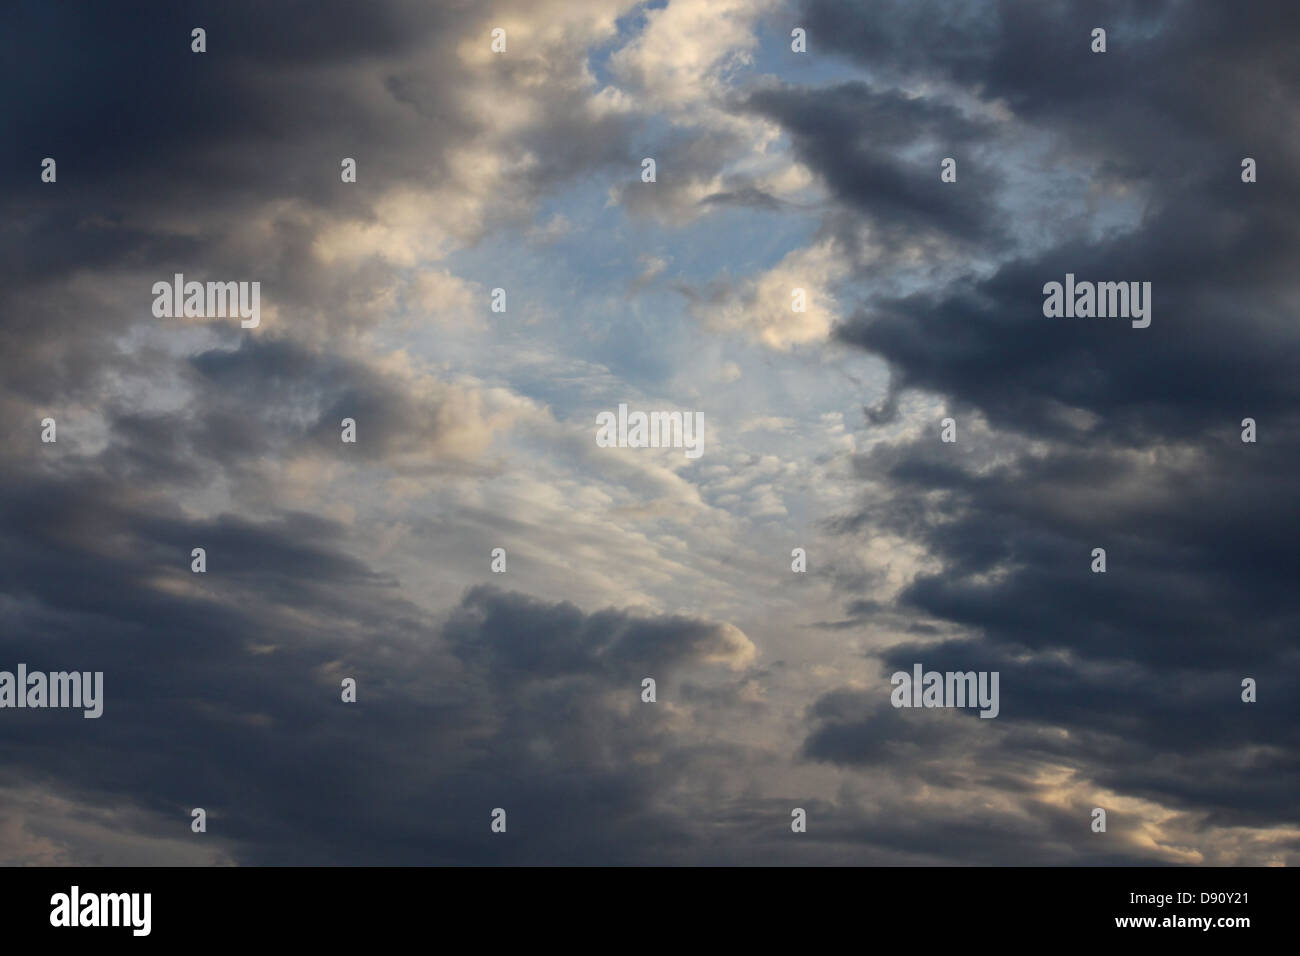 rain clouds in a sky Stock Photo